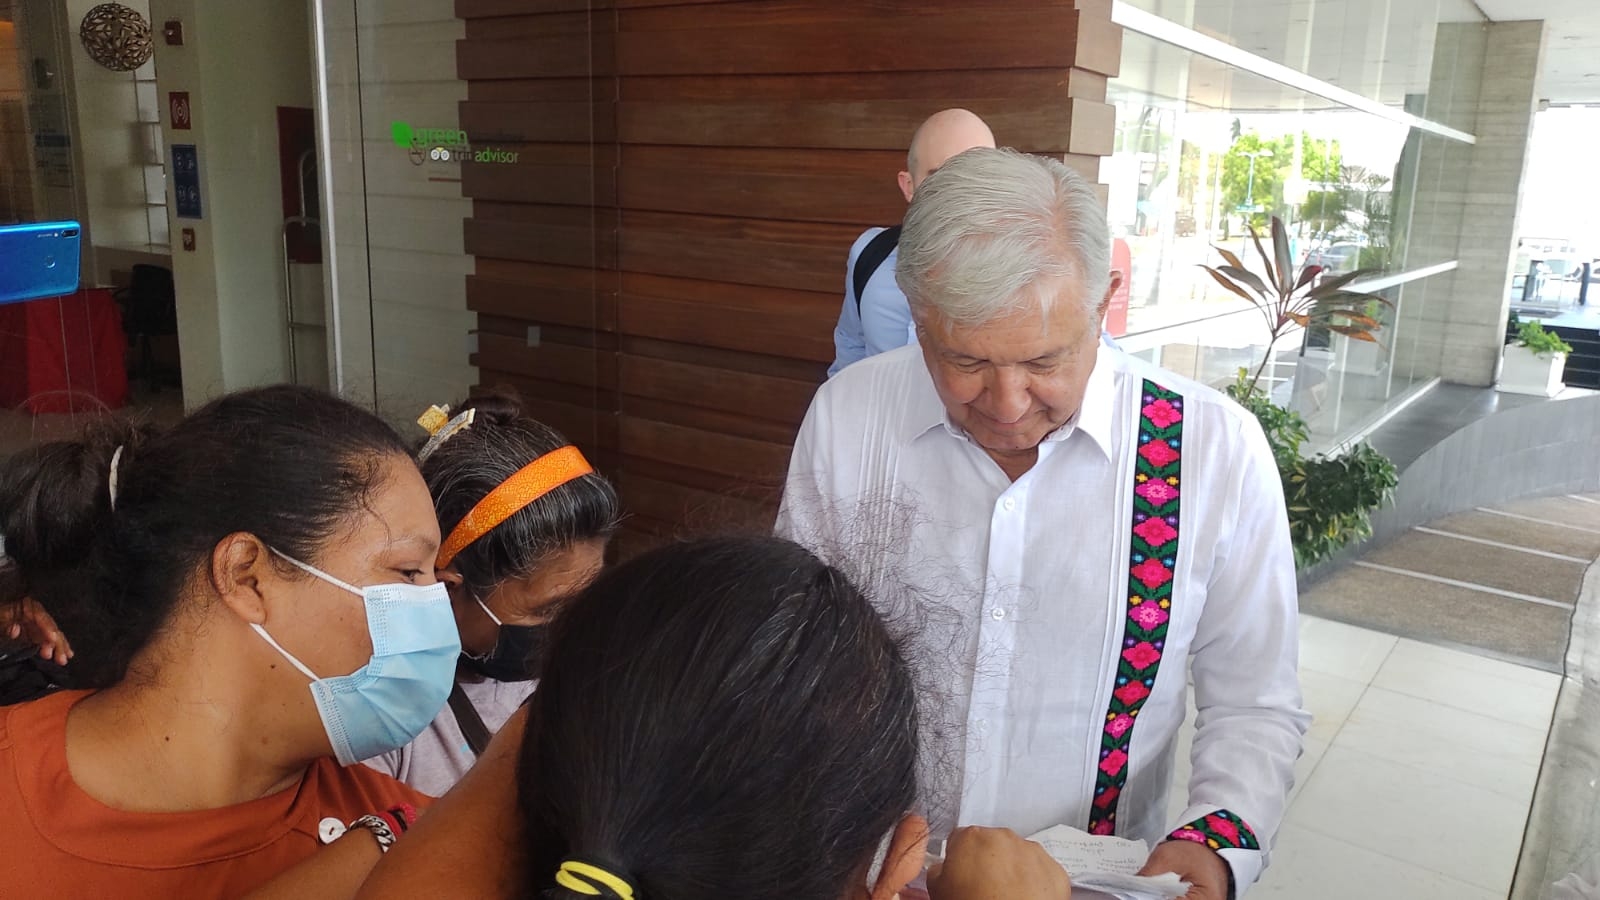 AMLO en Chetumal: Ciudadanos le entregan peticiones a su salida del hotel: VIDEO